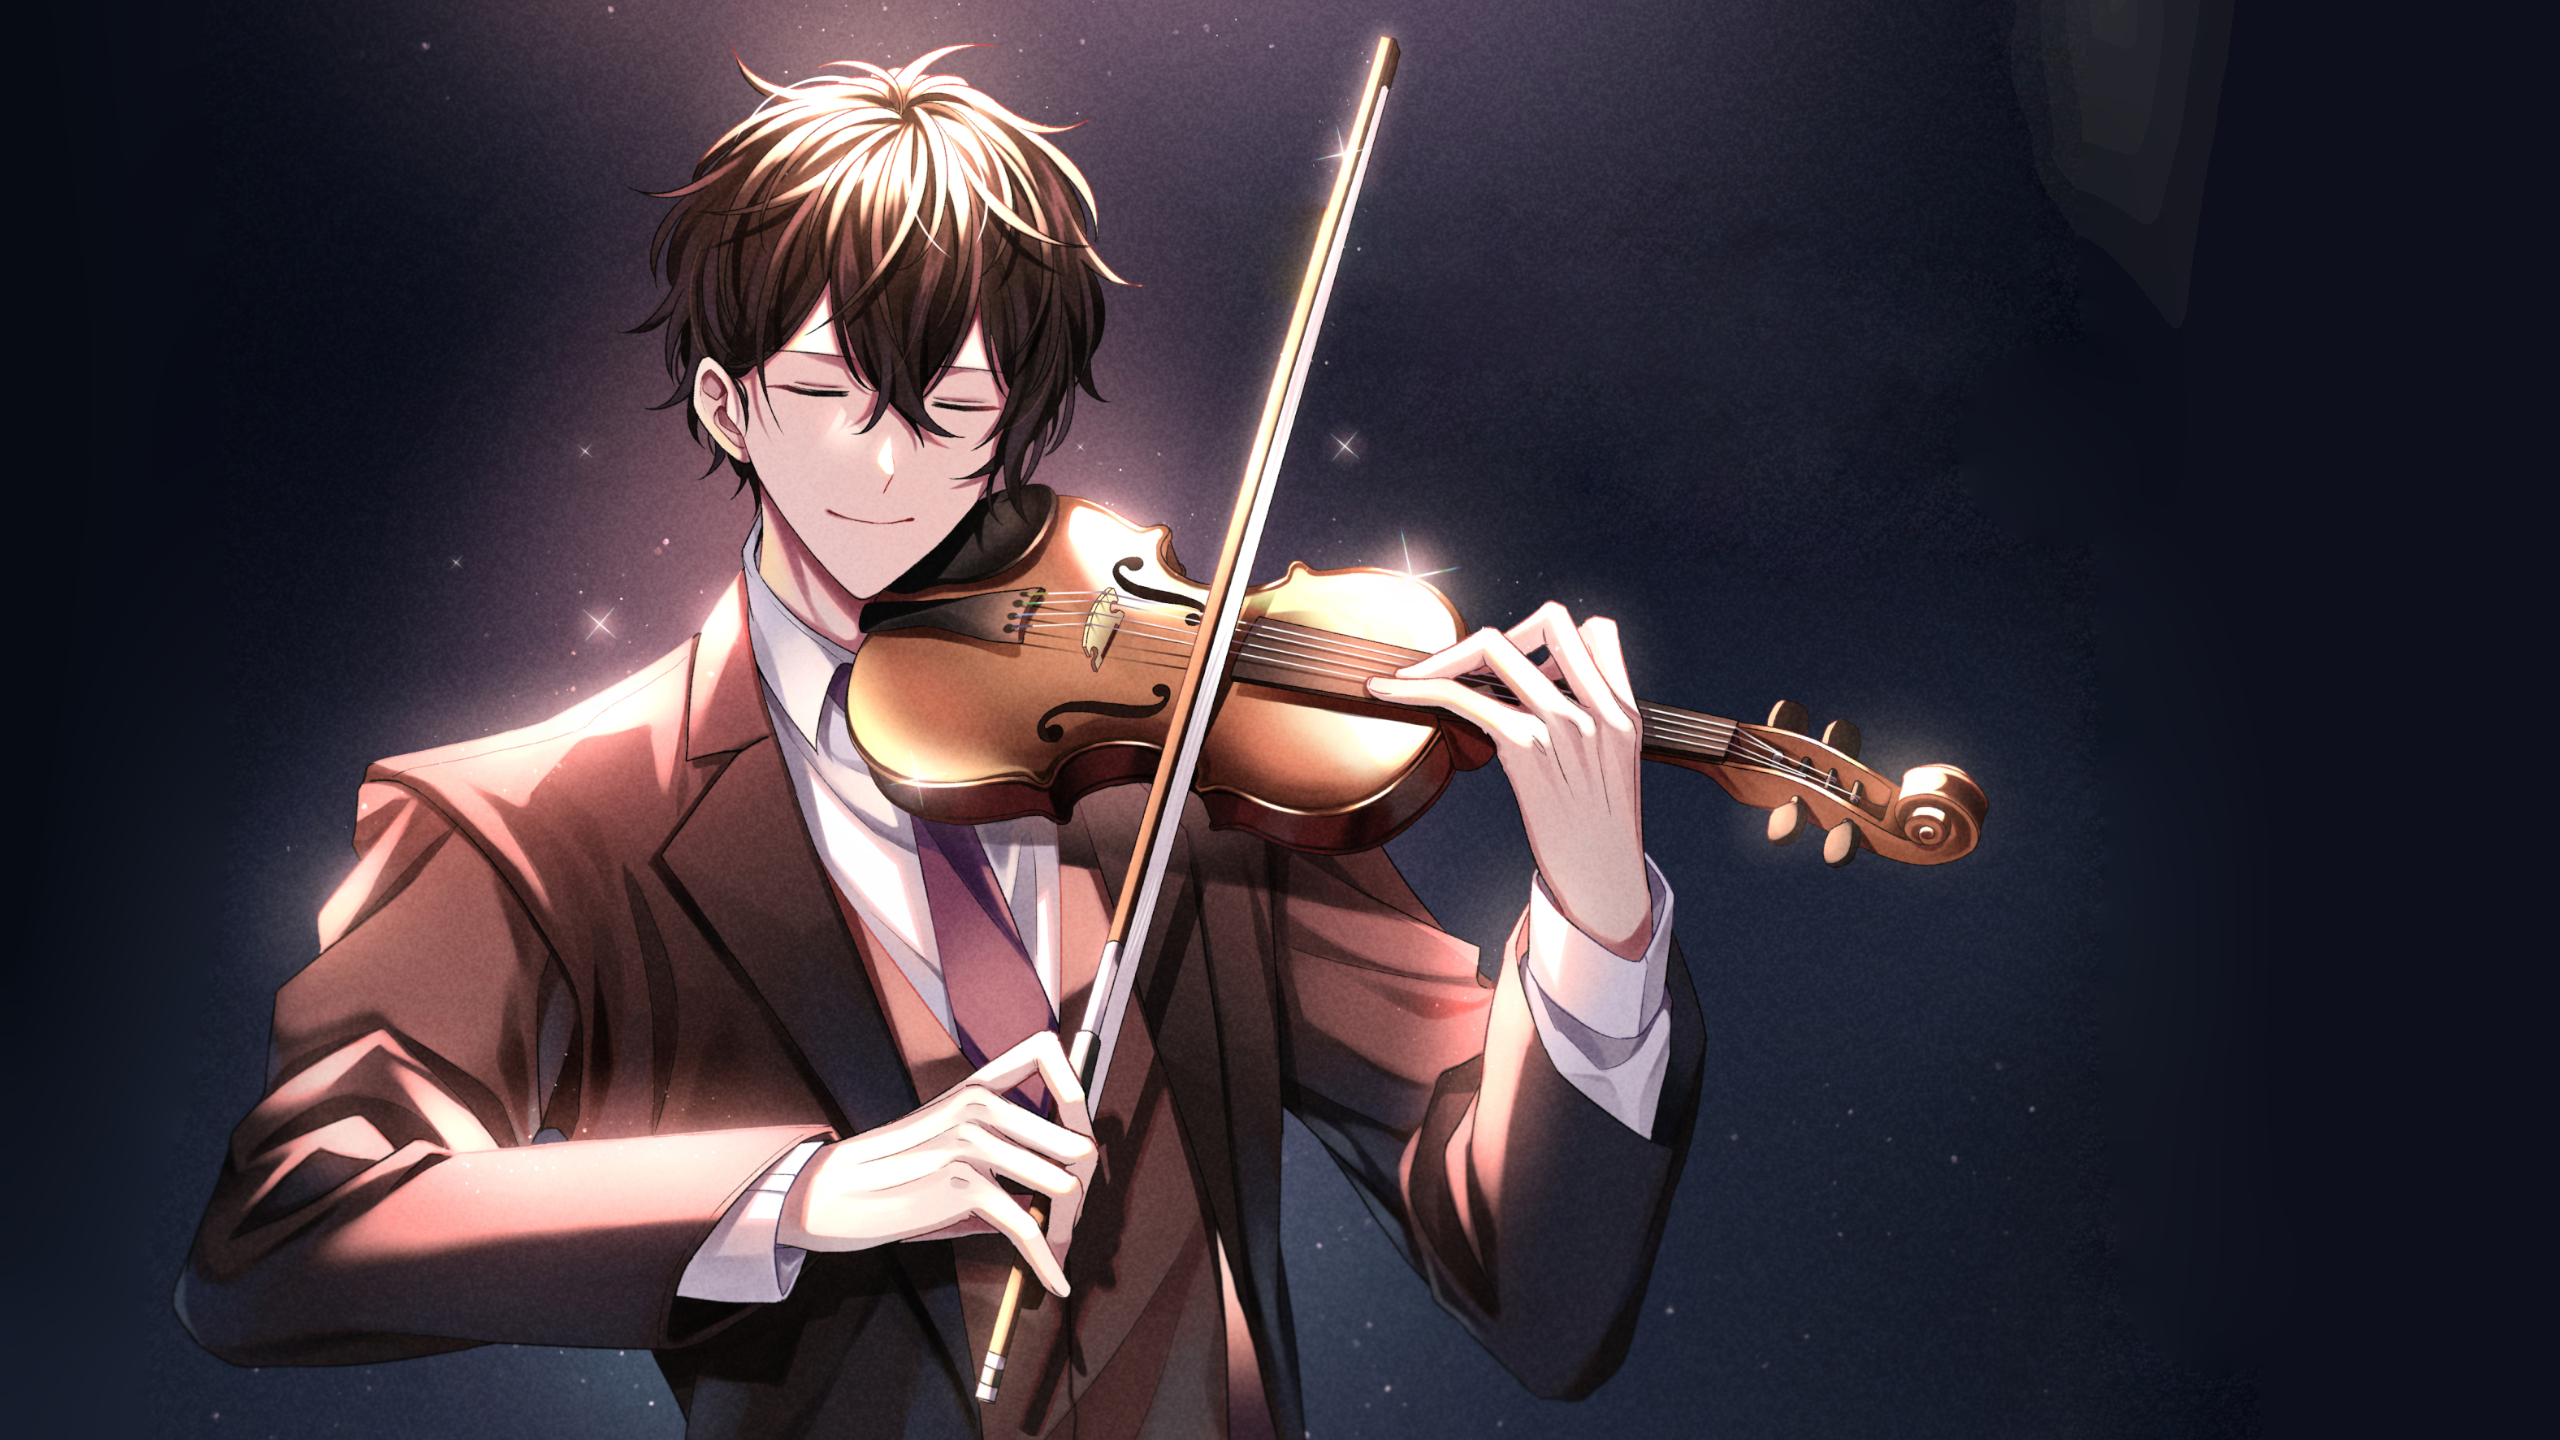 Anime 2560x1440 Murata Ugetsu given violin anime boys smiling